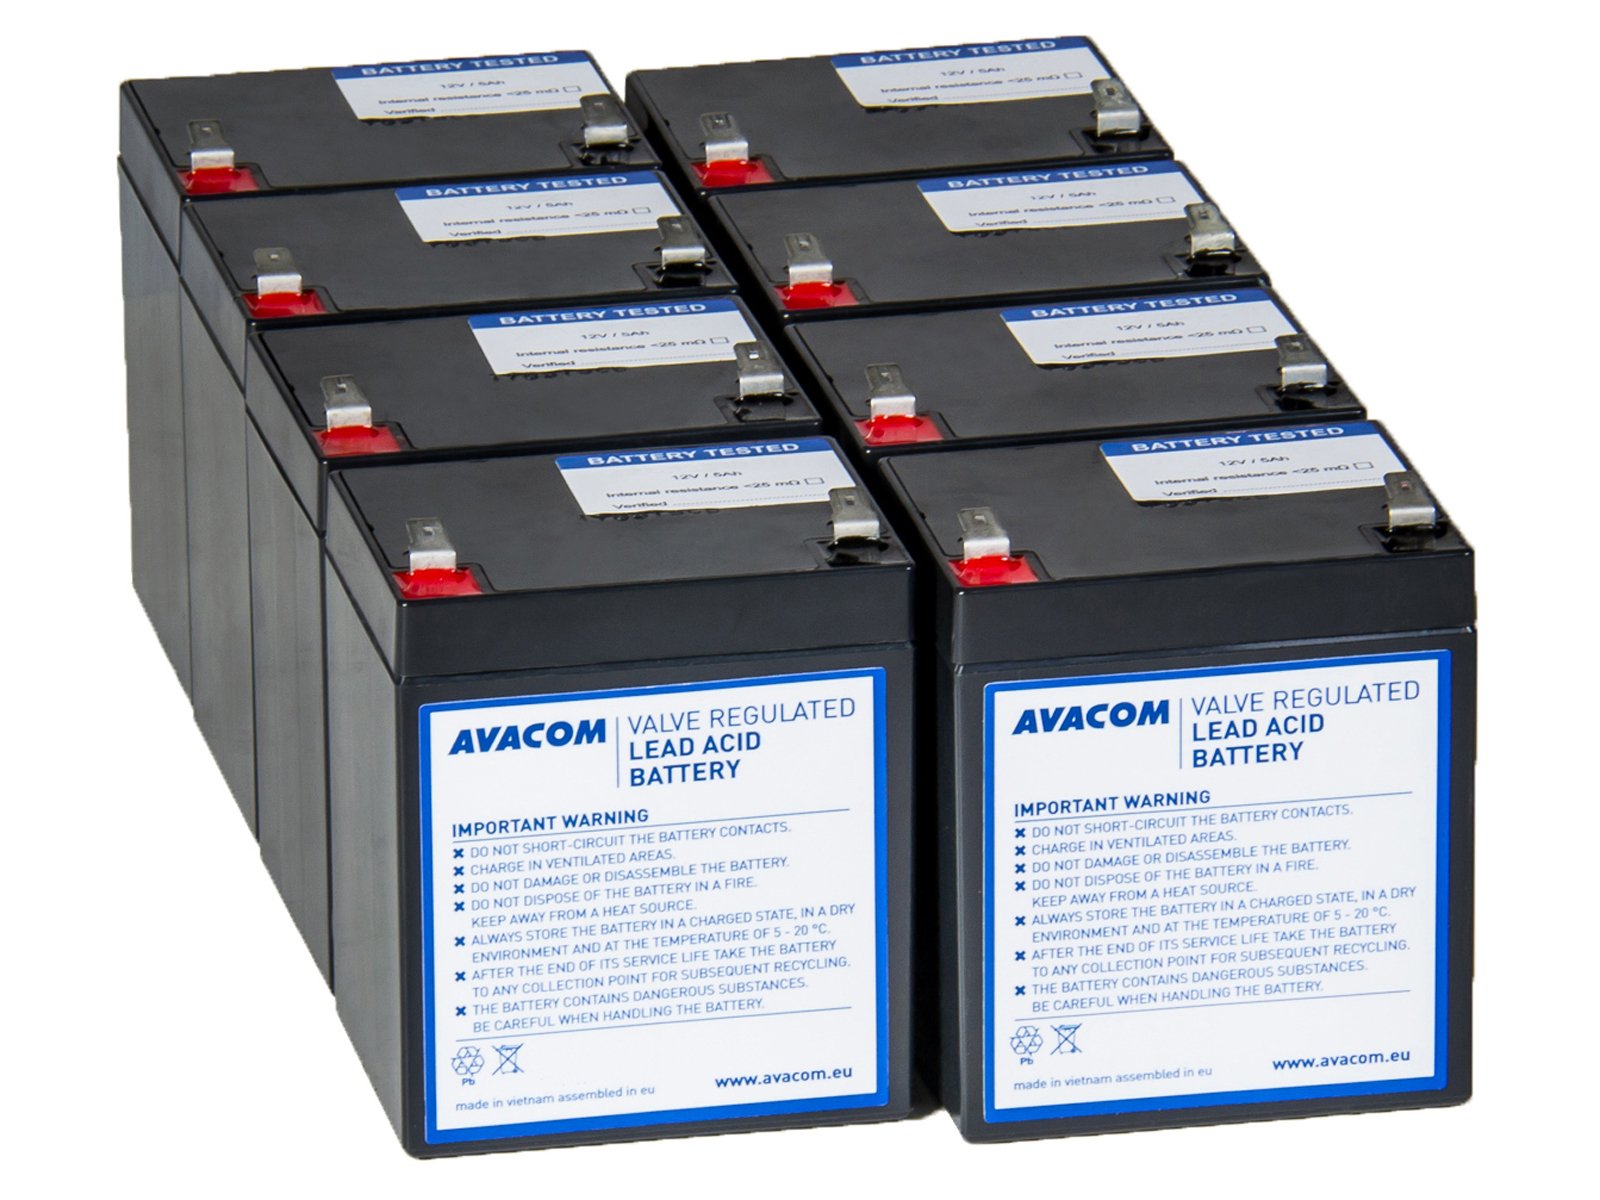 AVACOM RBC155 - kit na renováciu batérie (8ks batérií)